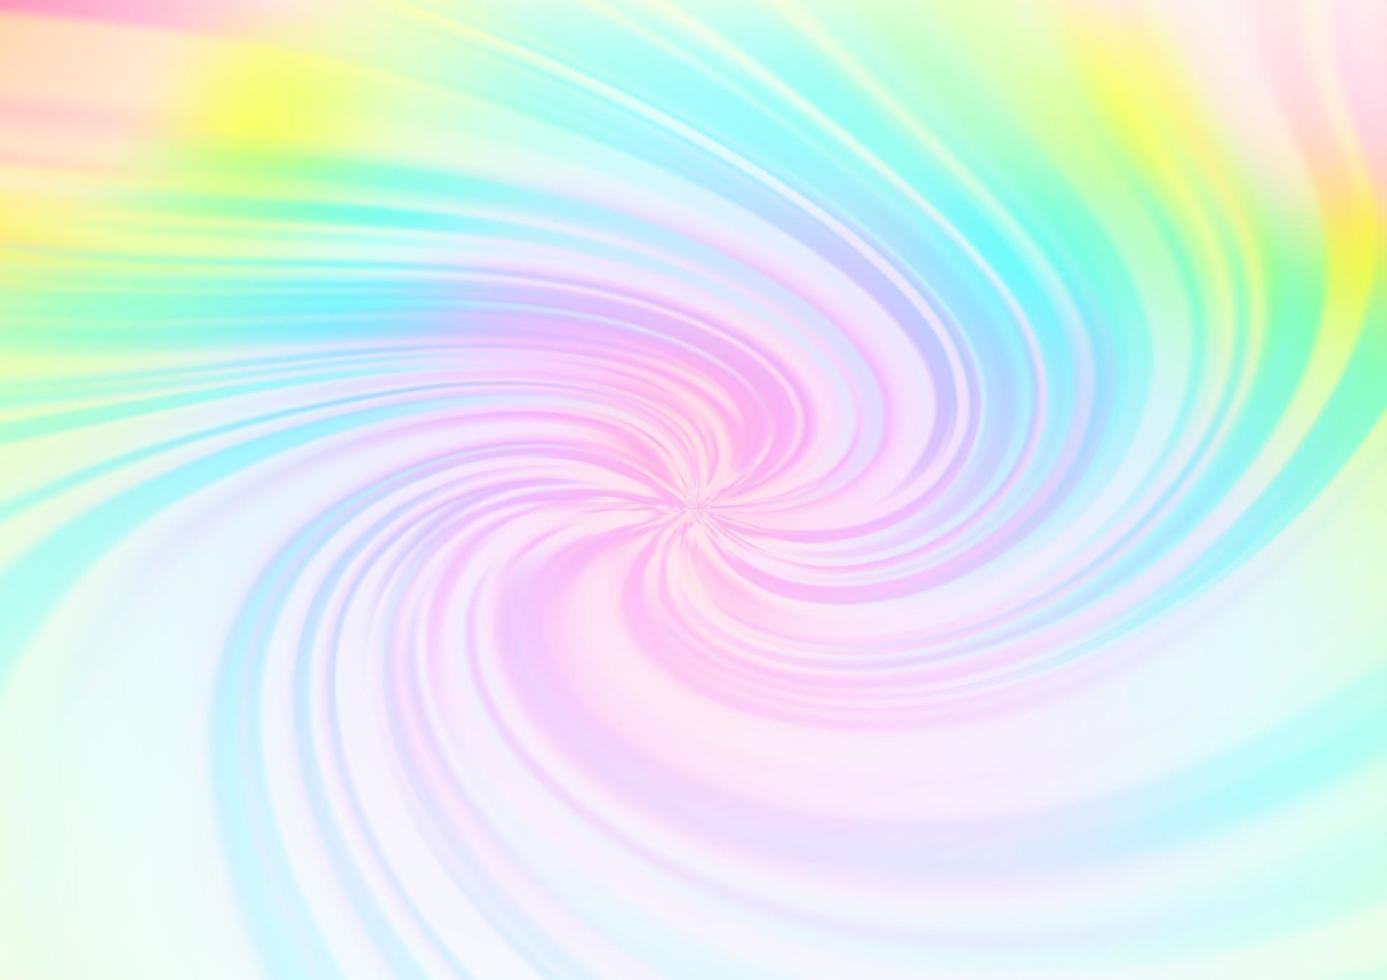 luz multicolor, arco iris vector plantilla abstracta de brillo borroso.